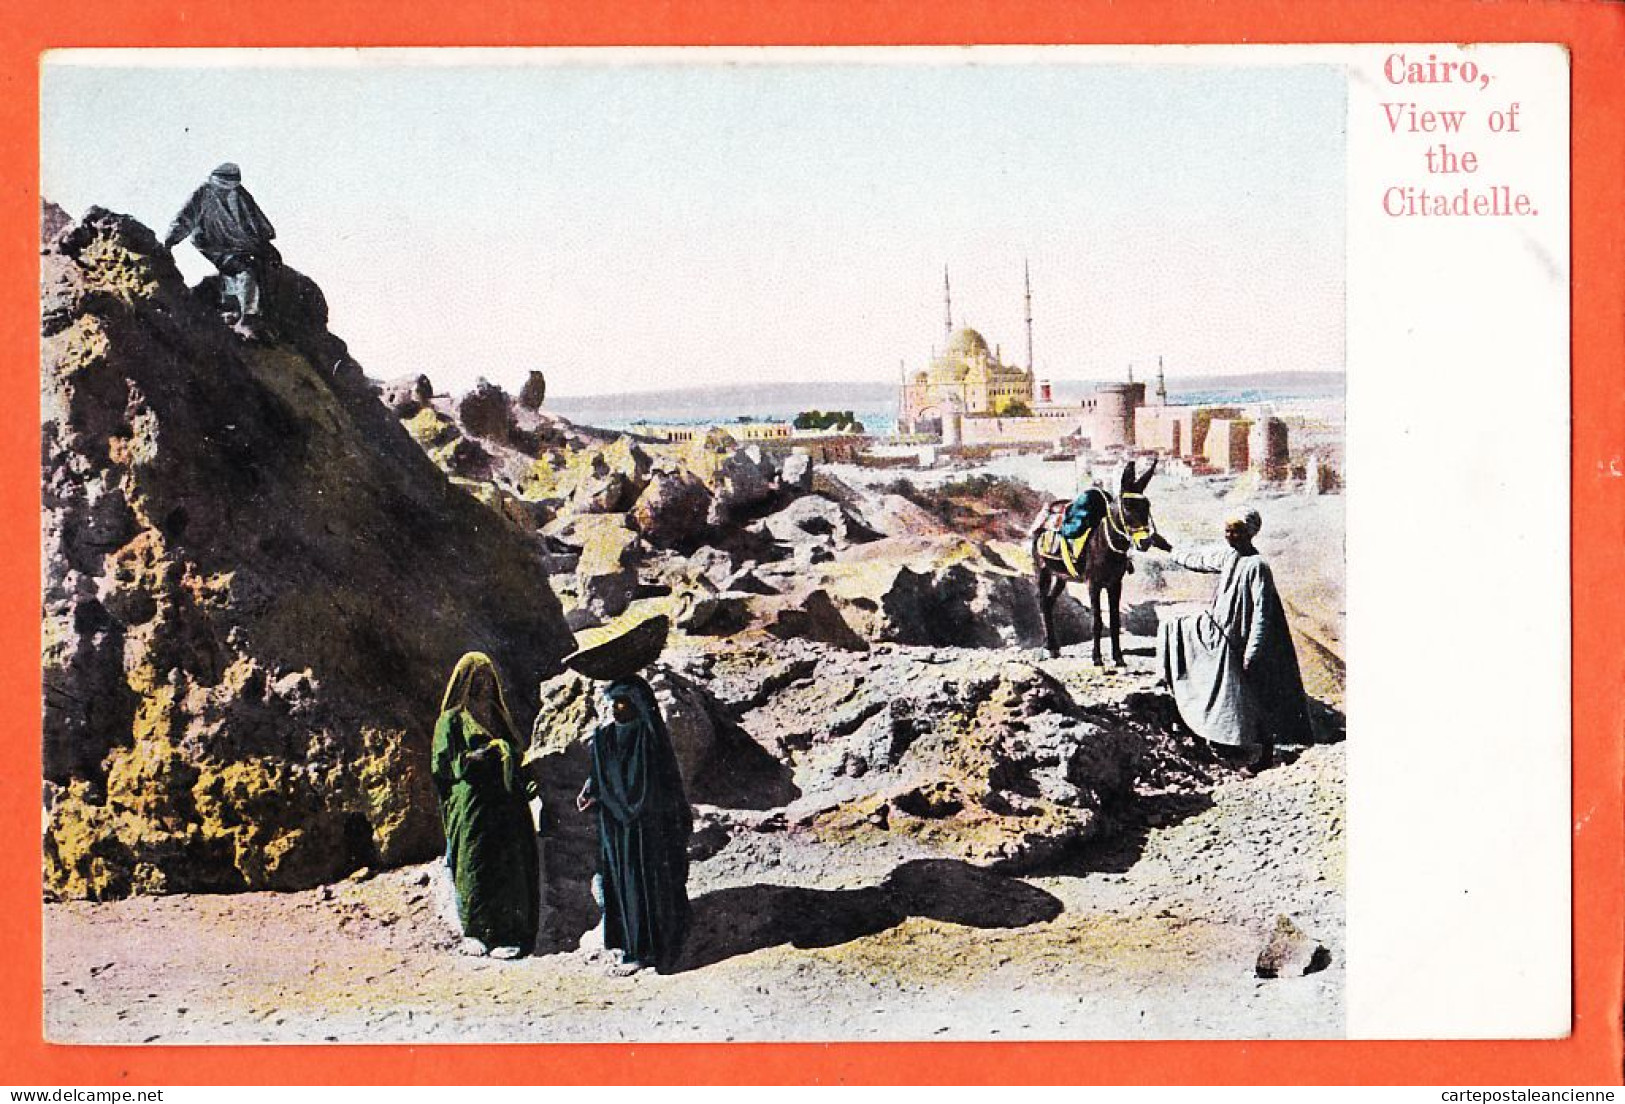 25978 / ⭐ ♥️ Etat Parfait ◉ LICHTENSTERN-HARARI Nr 29 ◉ CAIRO Egypt ◉ View Of The Citadelle 1905s  - Le Caire